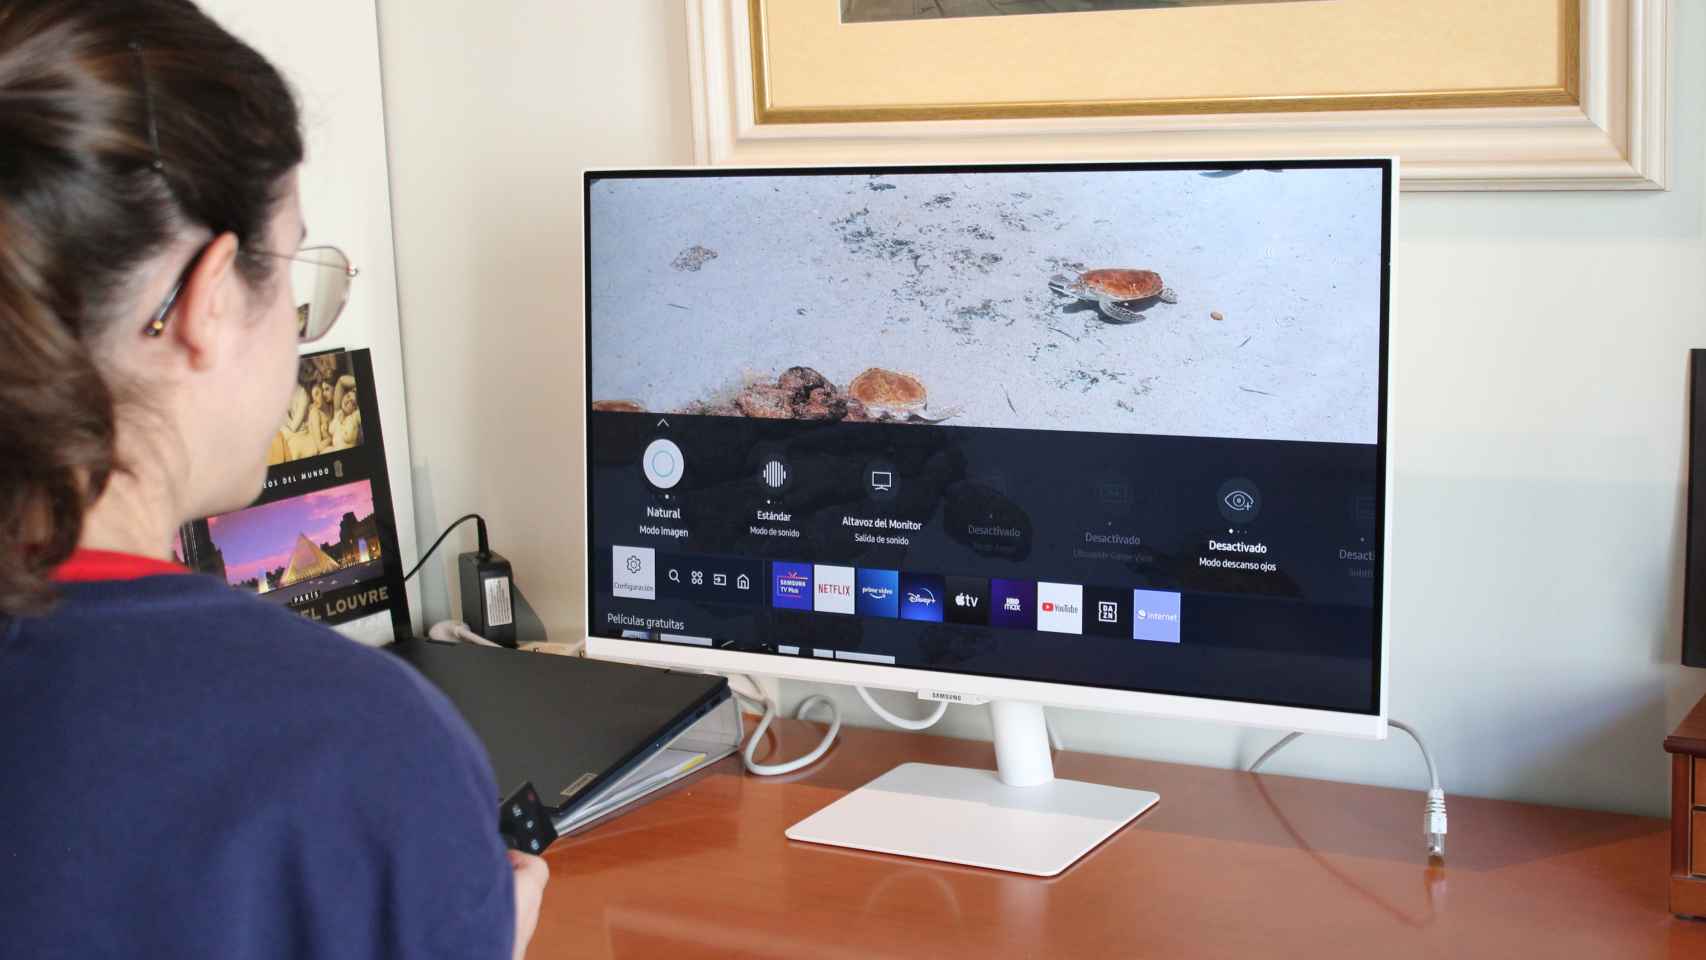 Este monitor Samsung de 27 pulgadas incorpora Smart TV y hoy está